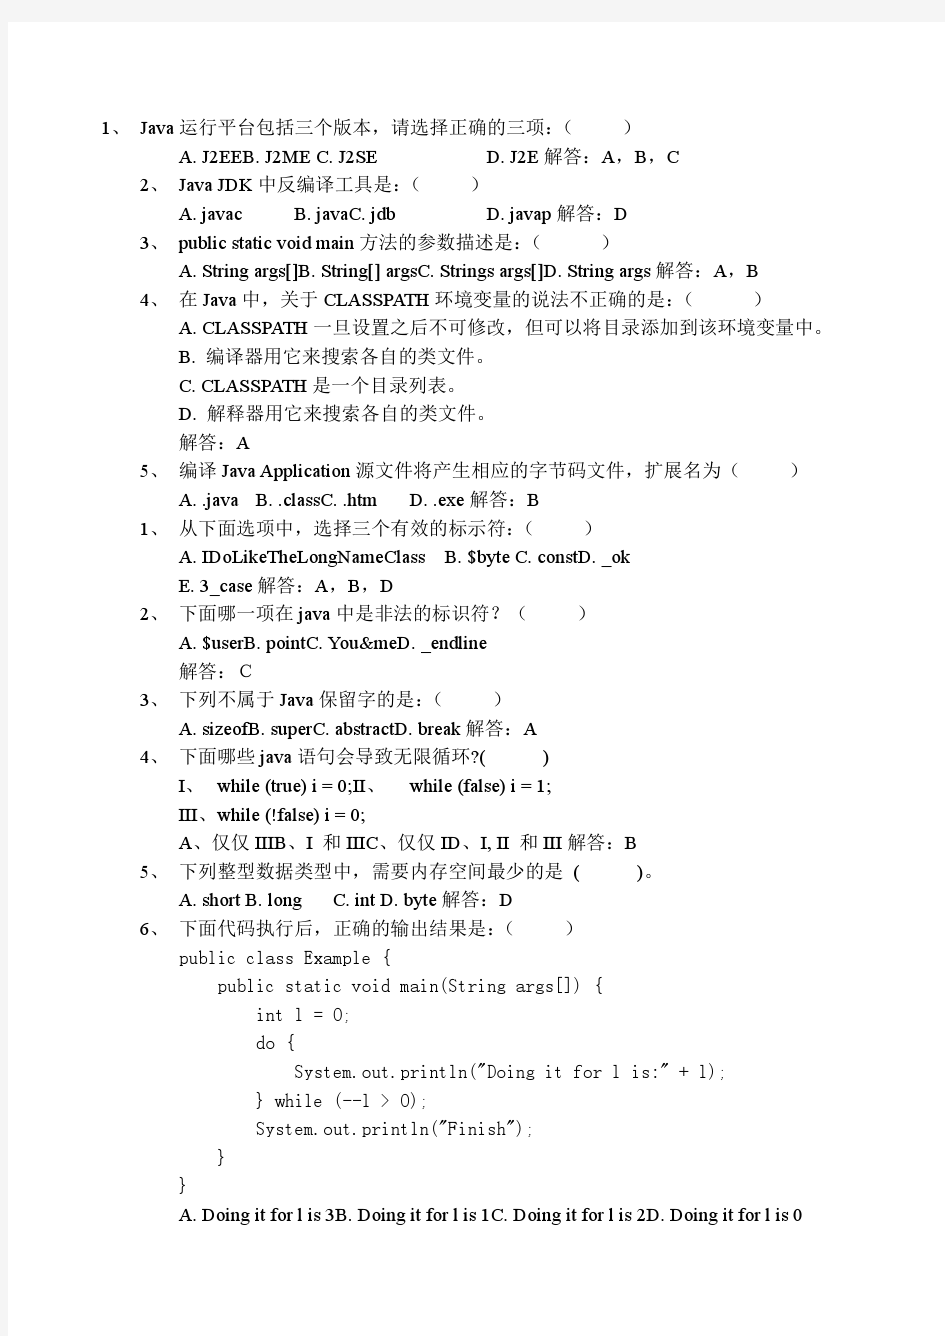 《Java语言程序设计基础教程》习题解答3